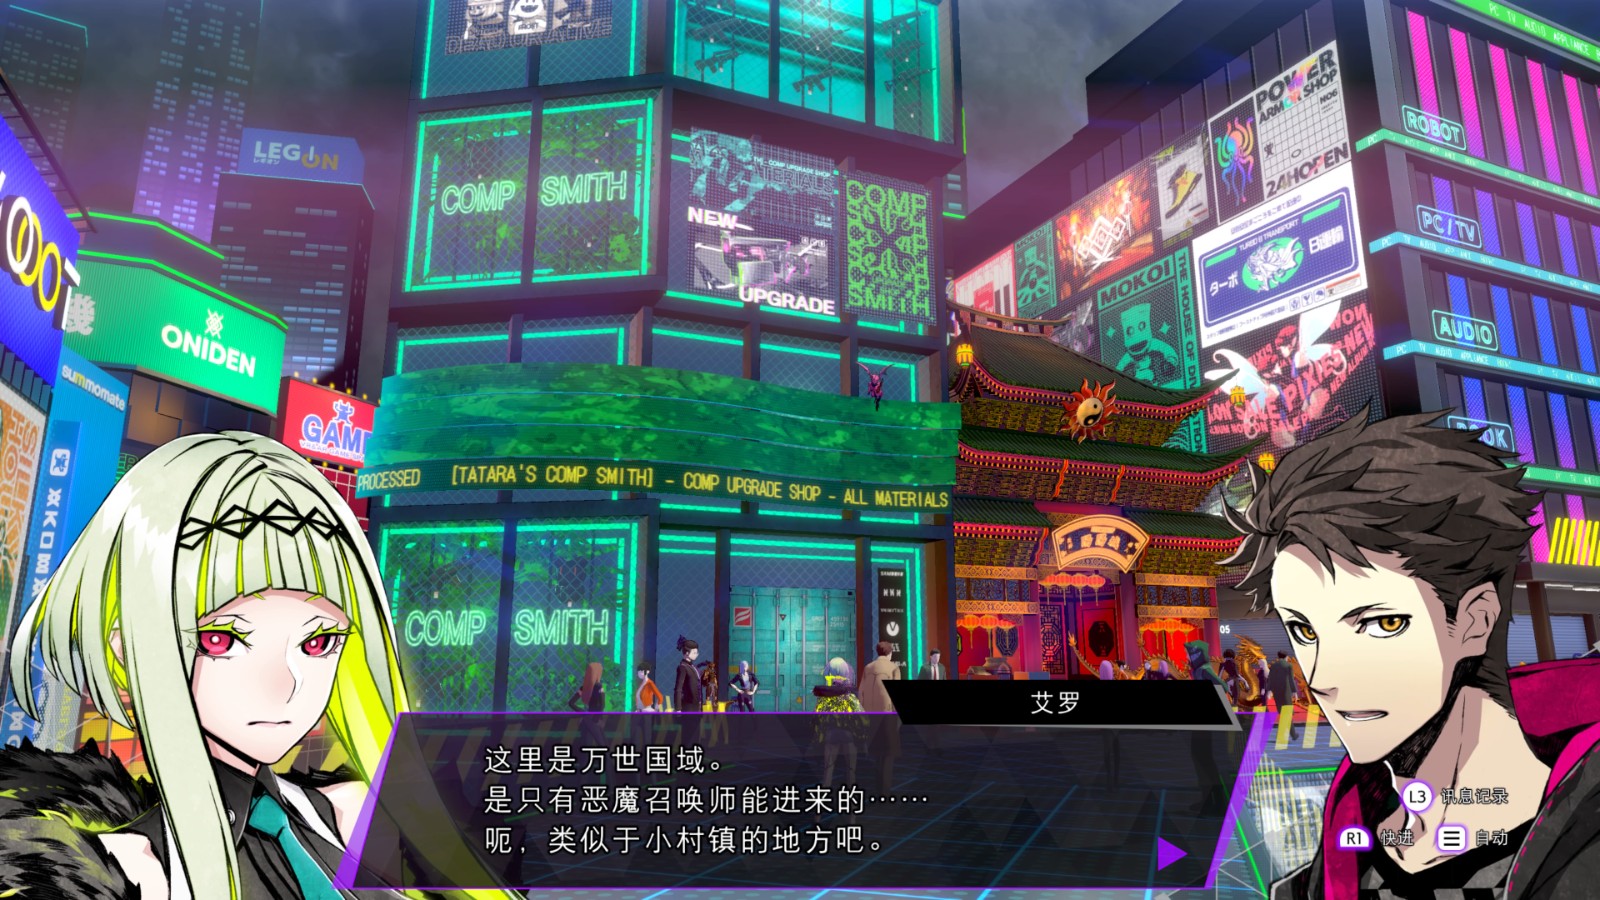 《灵魂骇客2》游戏情报第一弹 中文游戏截图公开